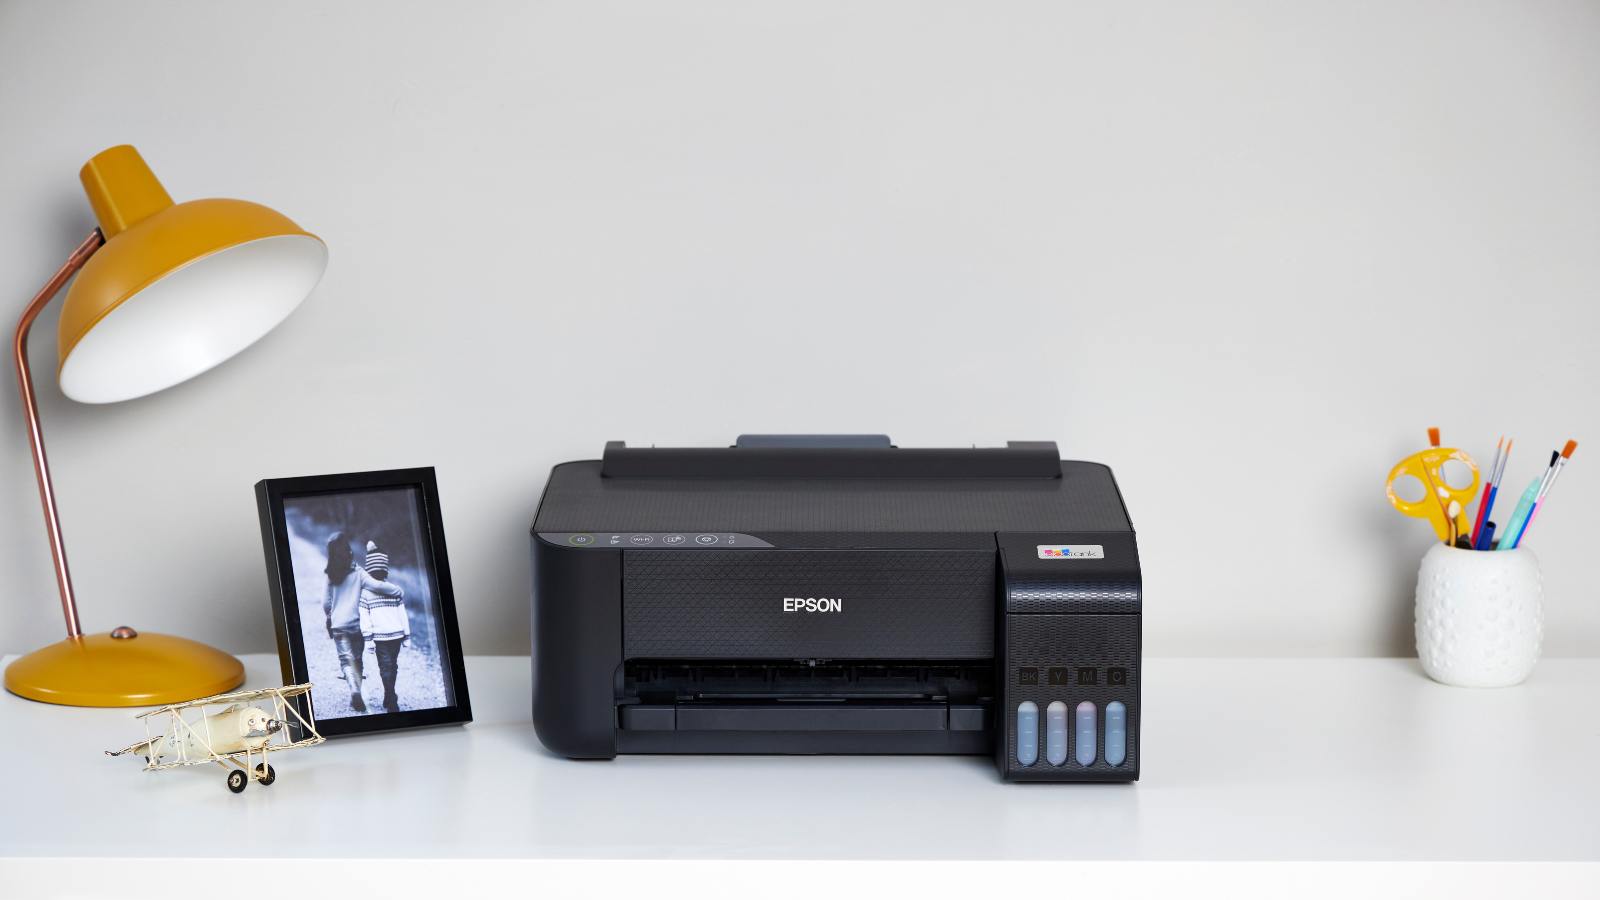 Je bekijkt nu Epson printer print met strepen